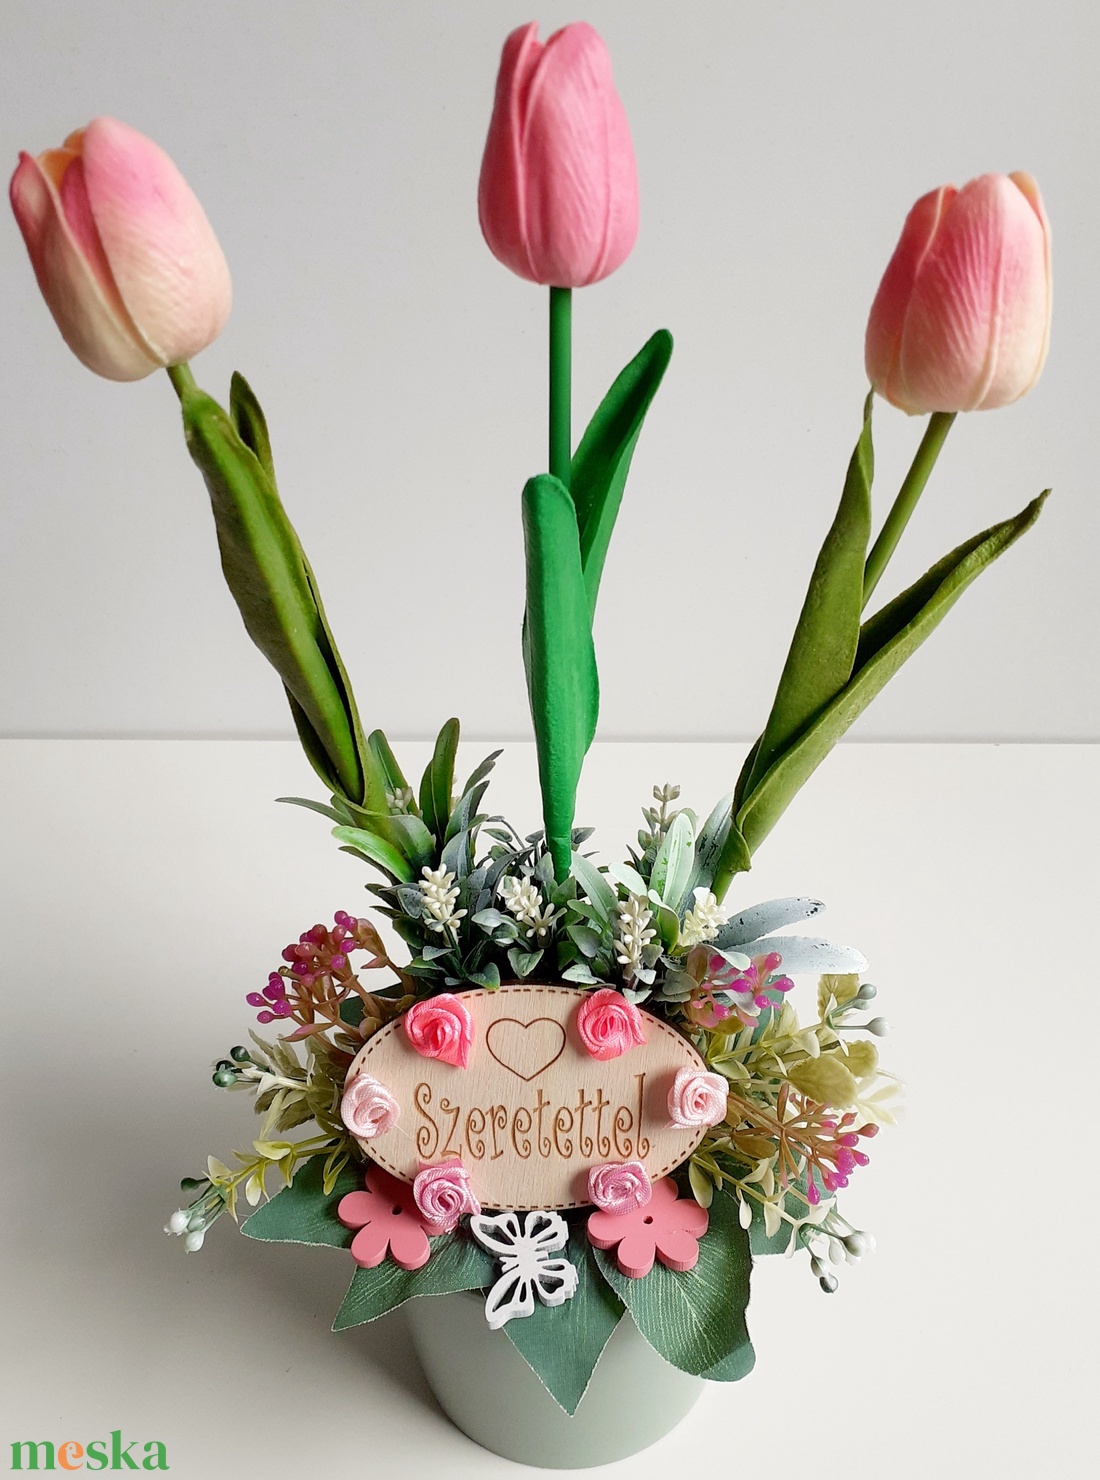 Tavaszi asztaldísz,rózsaszín tulipánokkal - otthon & lakás - dekoráció - asztal és polc dekoráció - asztaldísz - Meska.hu